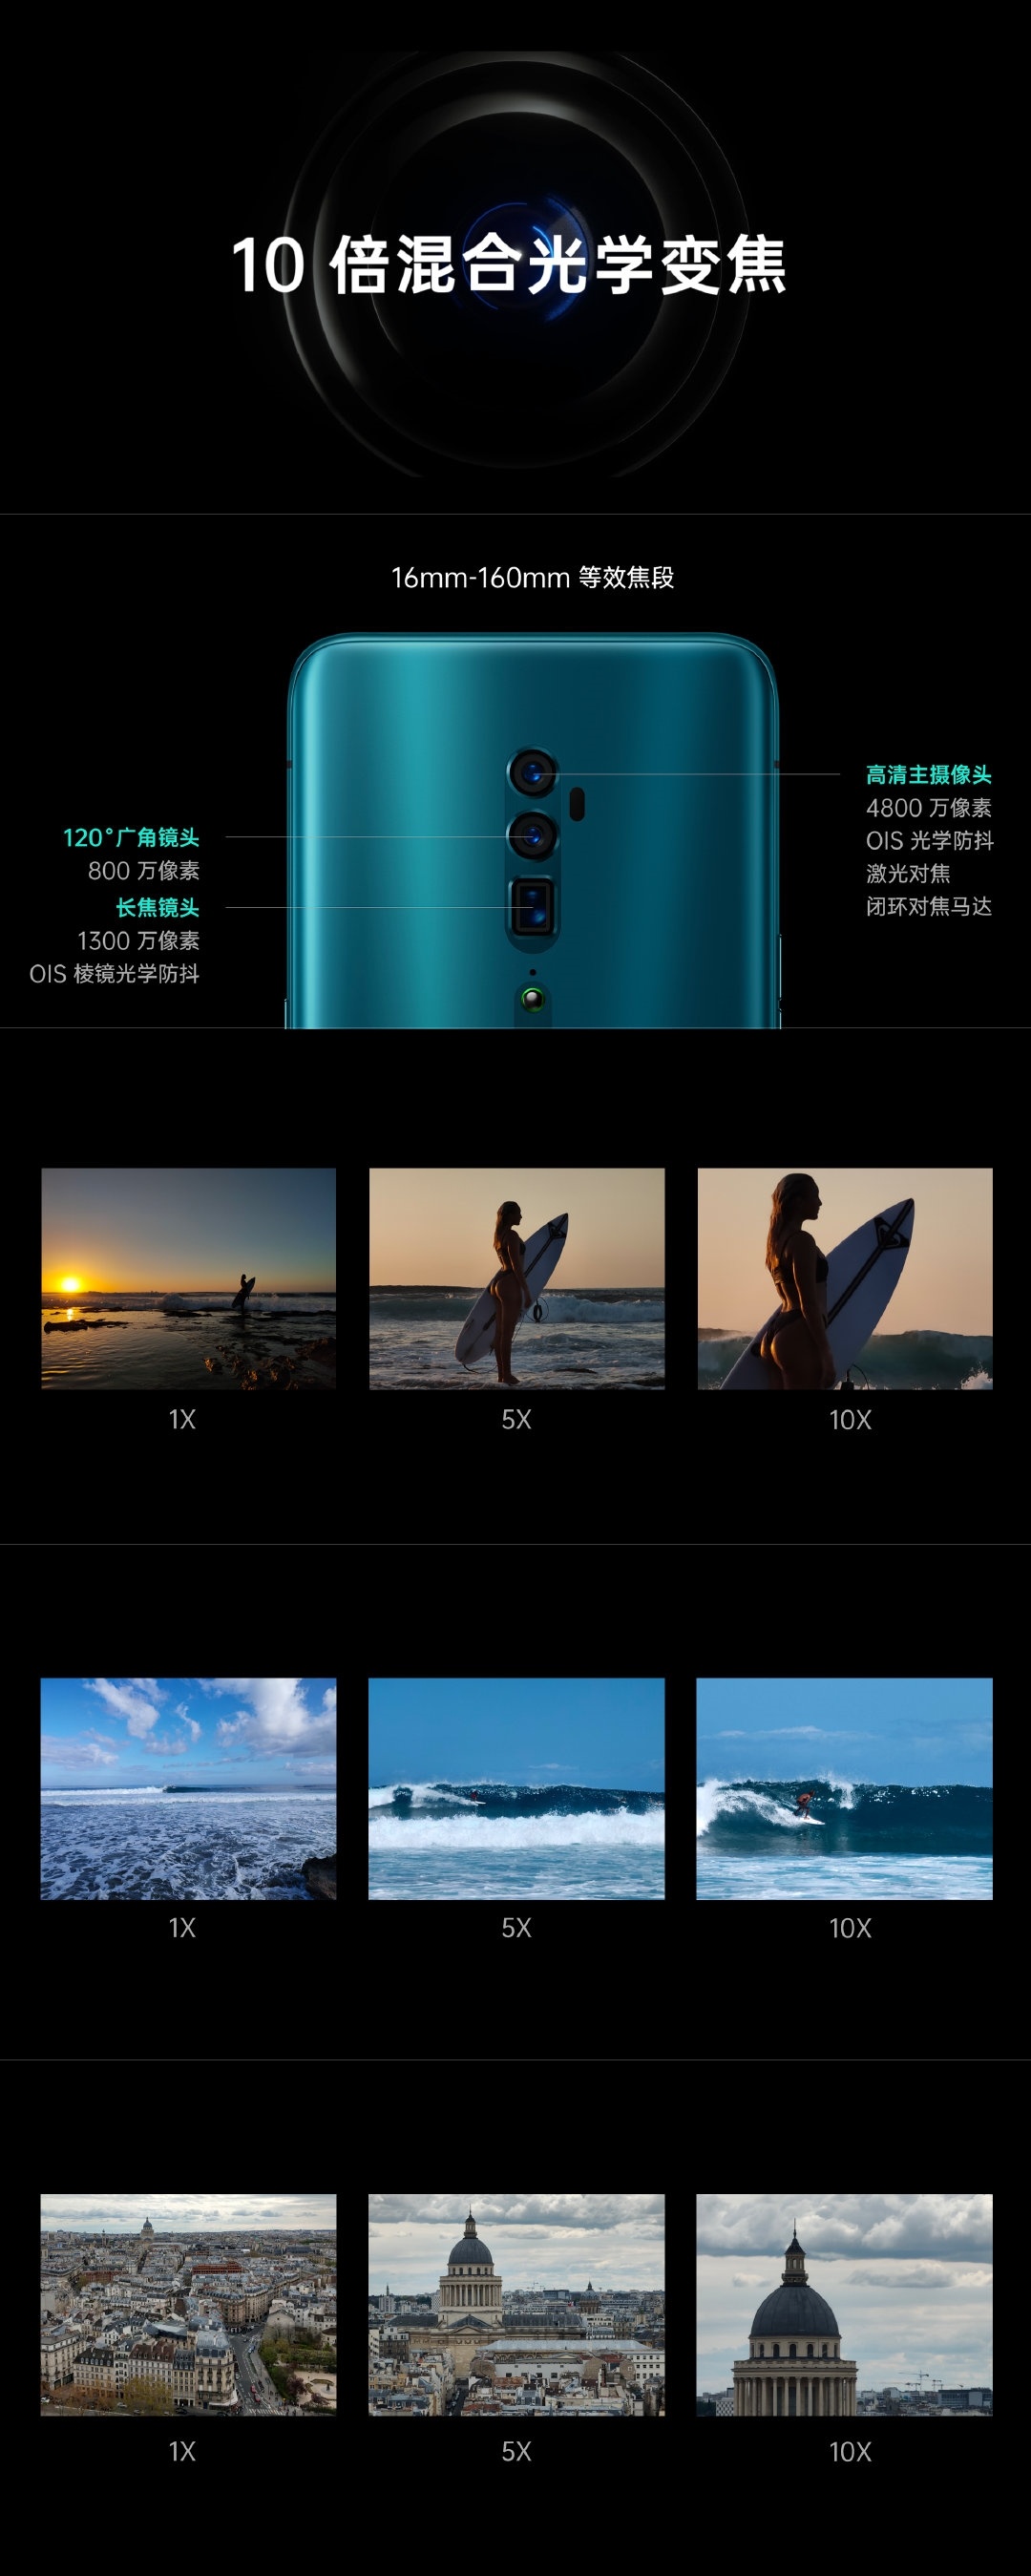 oppo reno分为多个版本,其中顶配的10倍变焦版后置搭载三摄全焦段影像